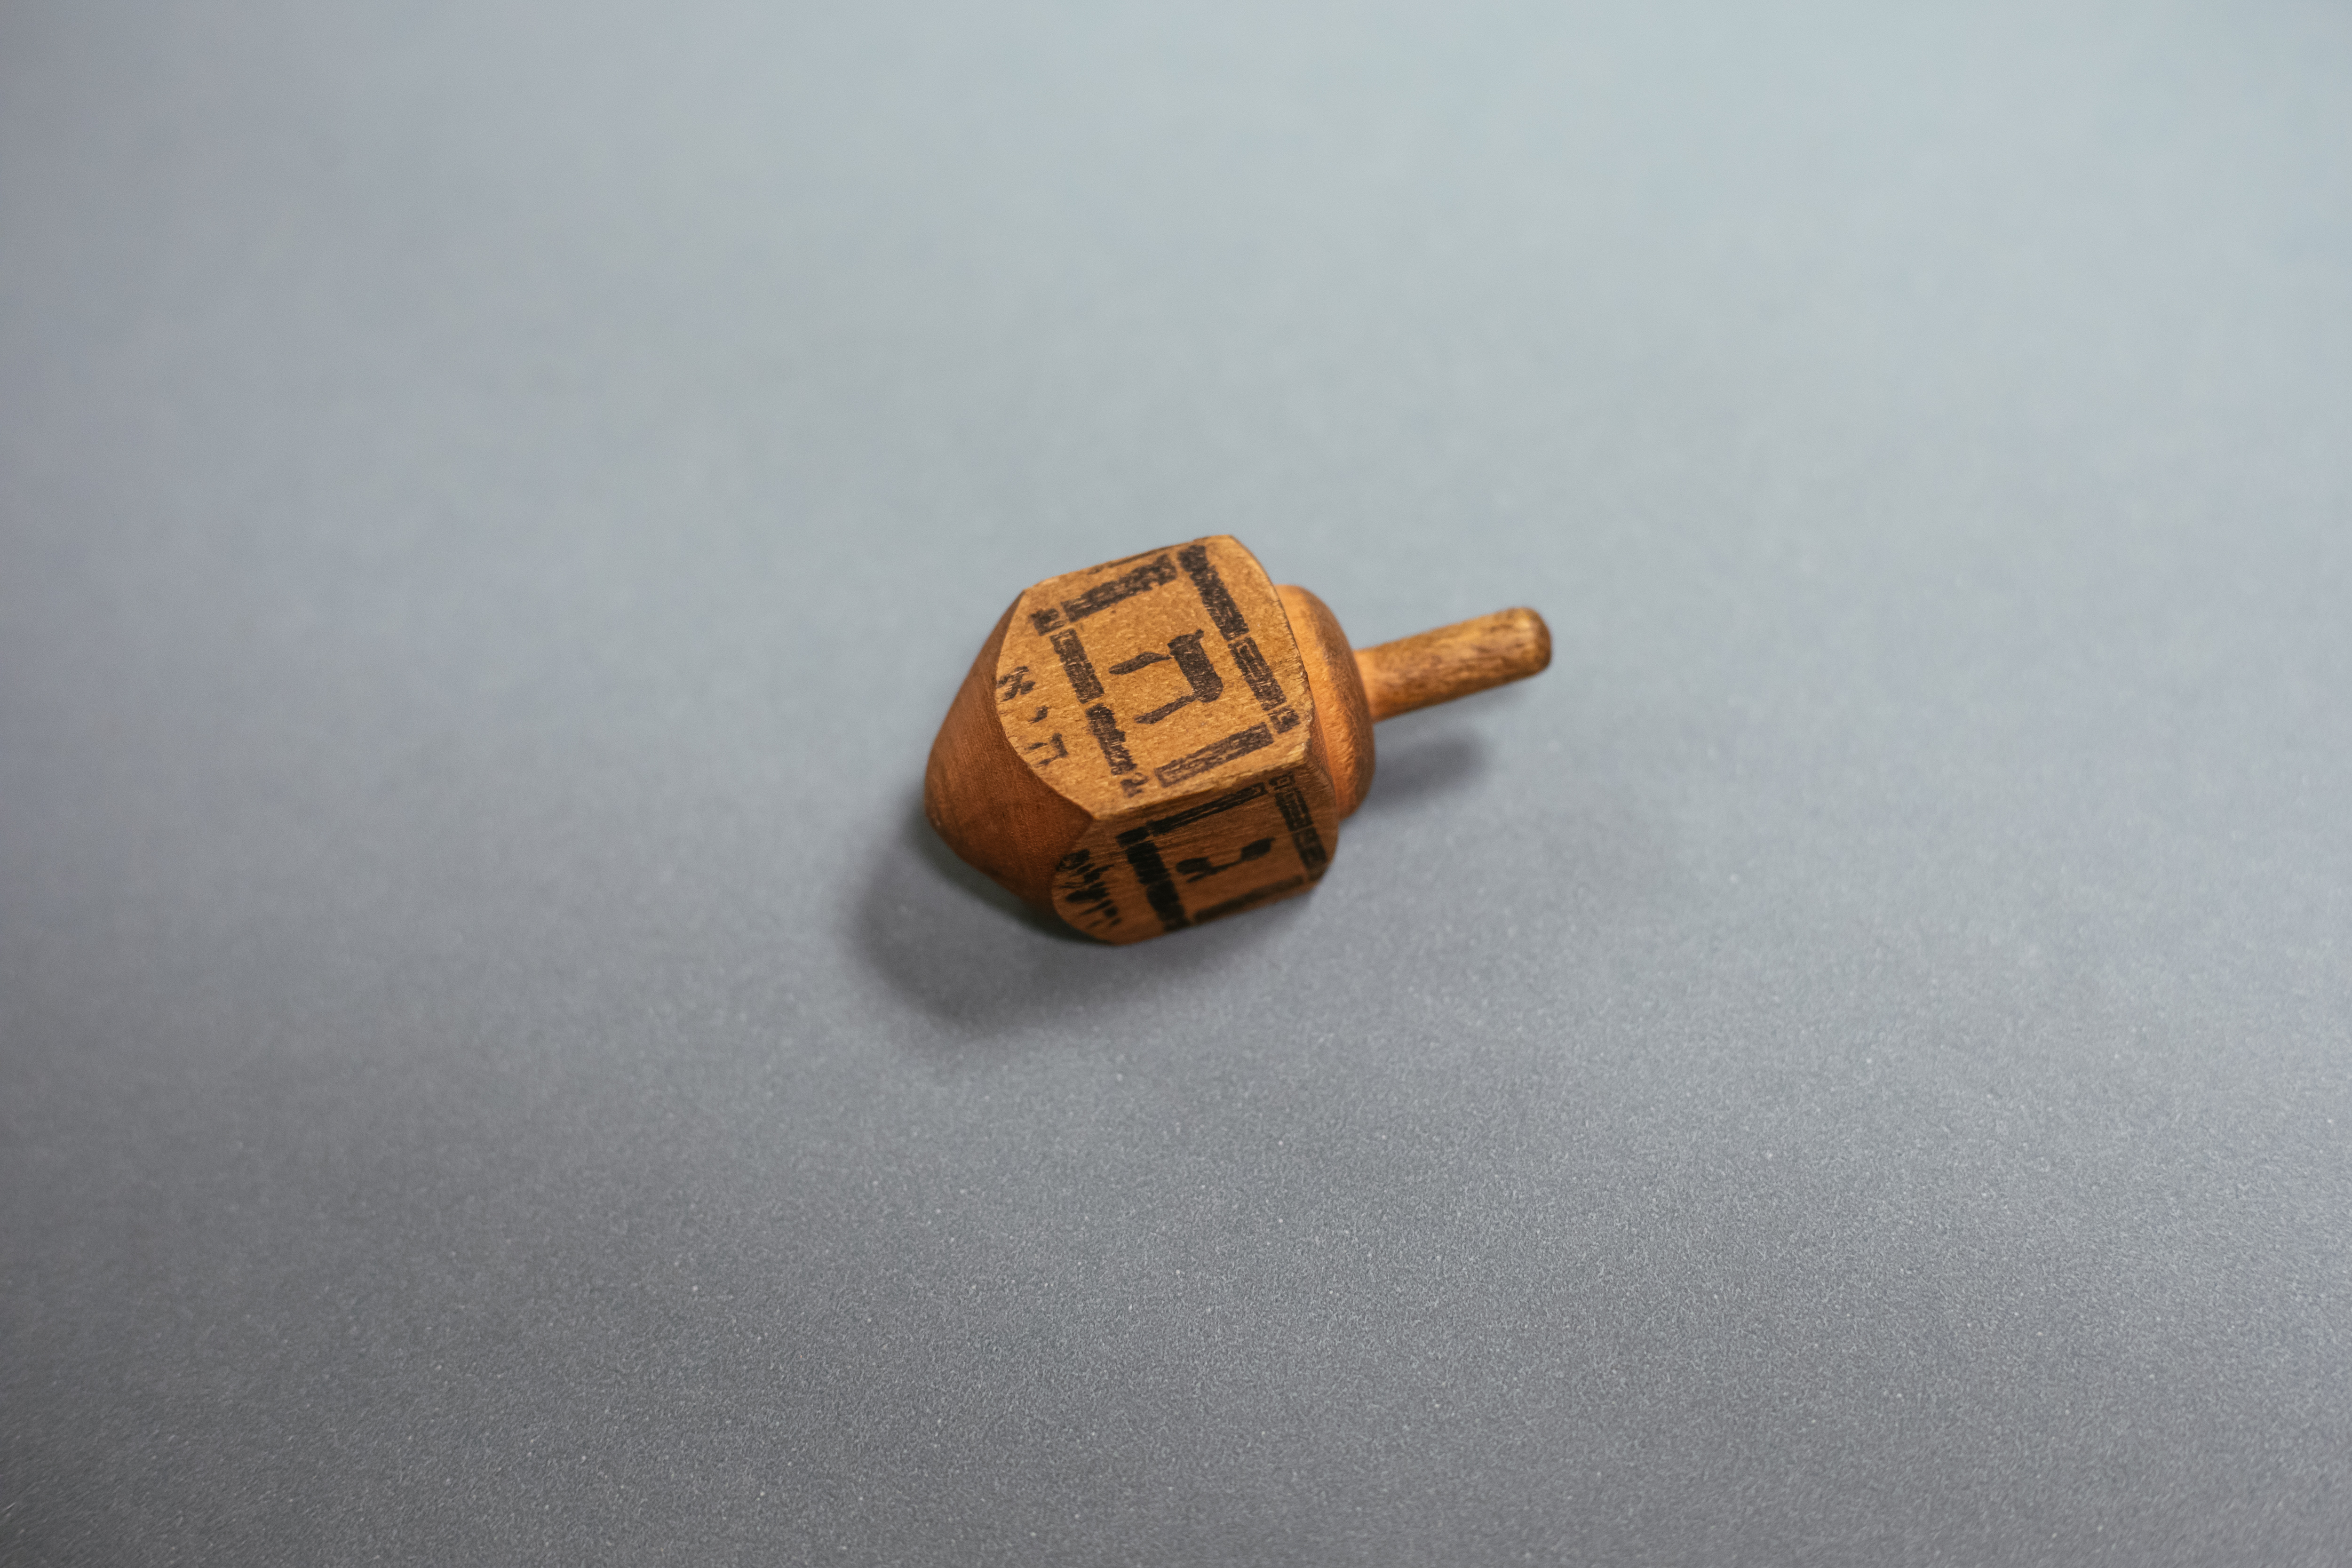 Czworoboczny bączek chanukowy (drejdel) wykonany z drewna, z literą hebrajską na każdym boku.